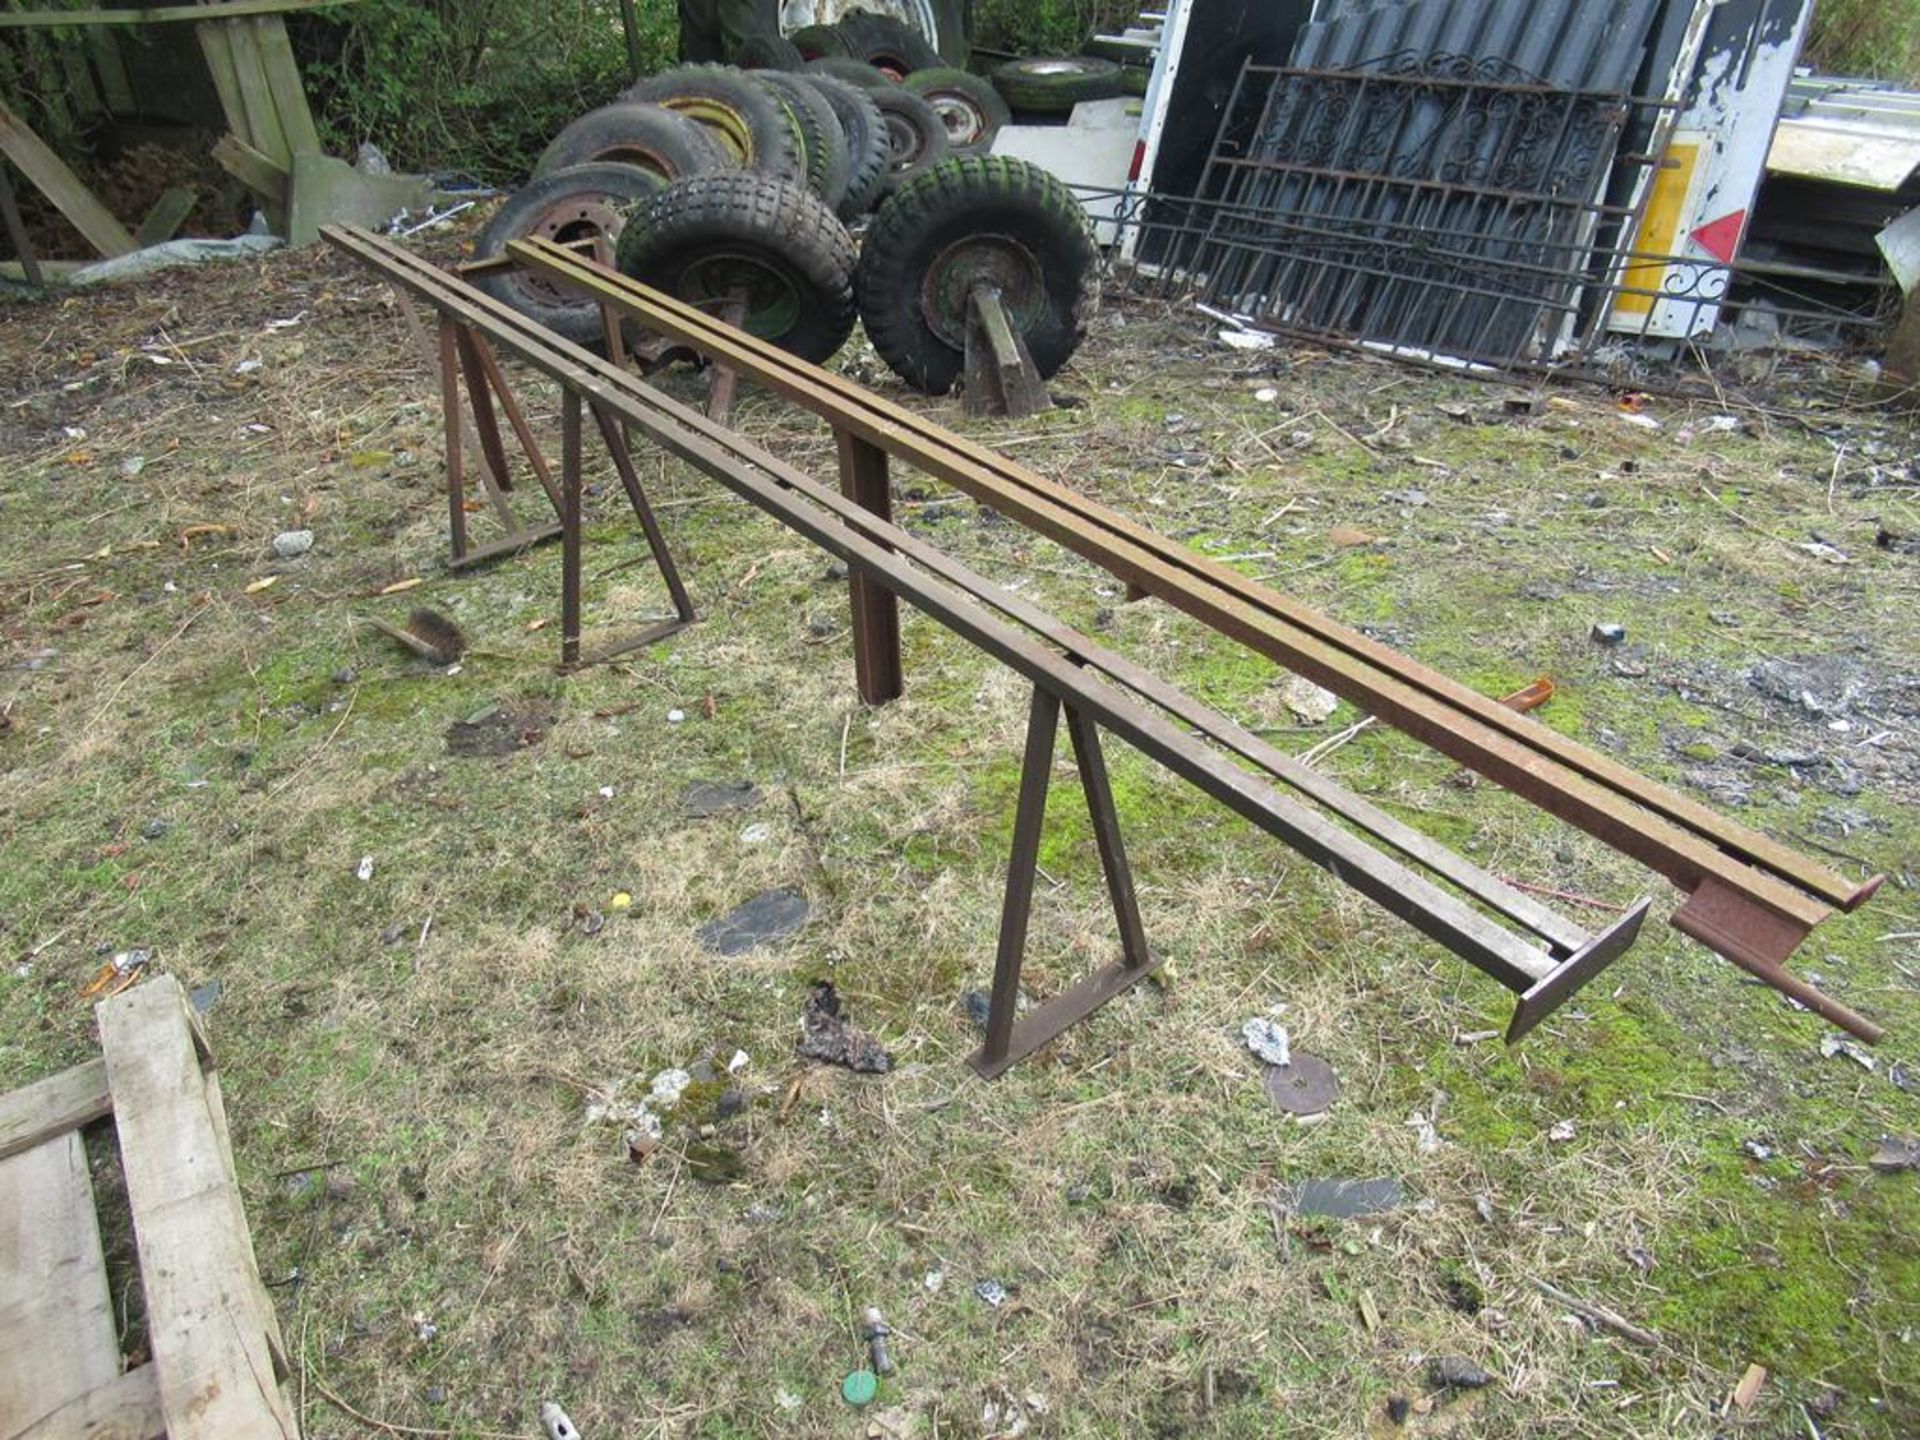 A Truecraft 12" x 7" hydraulic metal cutting bandsaw 240V - Image 5 of 5